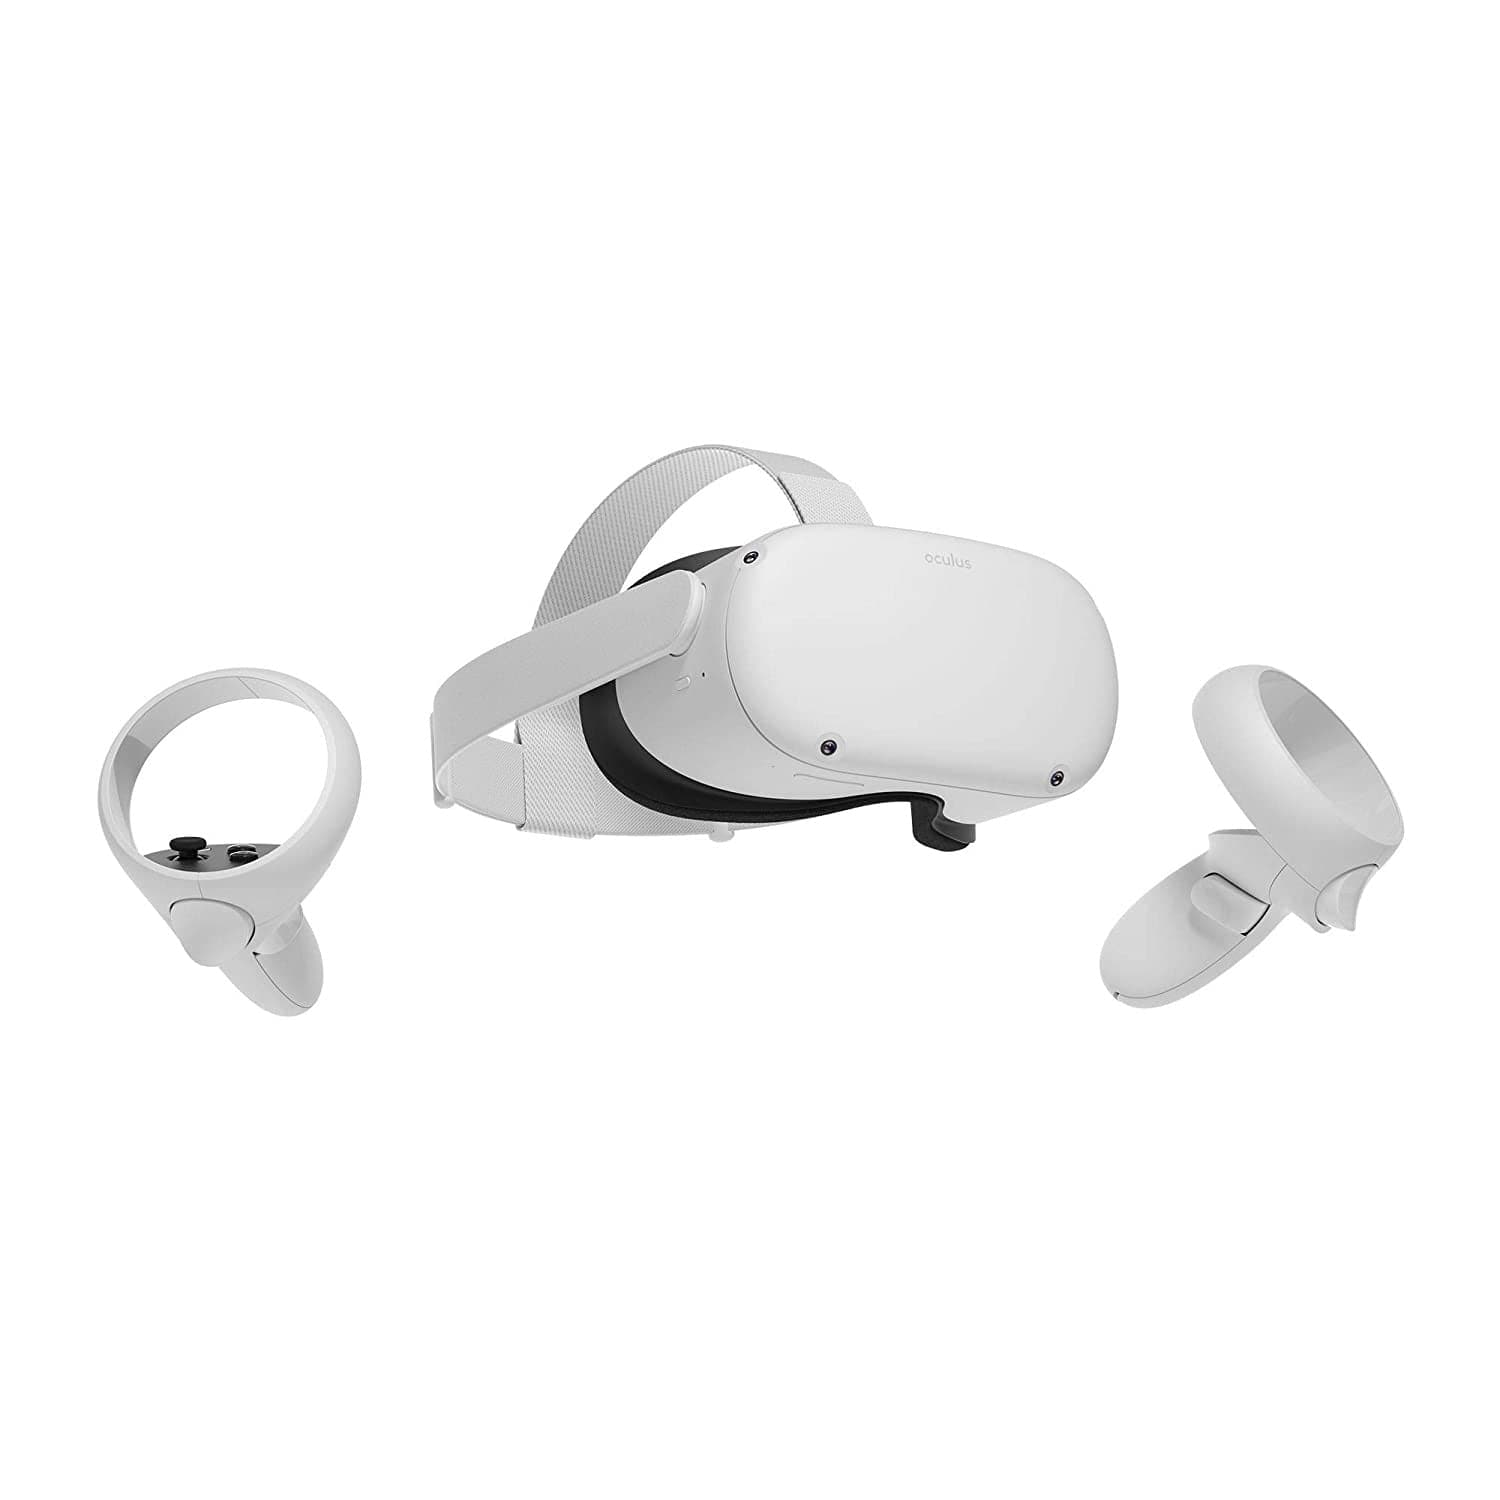 משקפי מציאות מדומה - Oculus Quest 2 - חבילה משודרגת